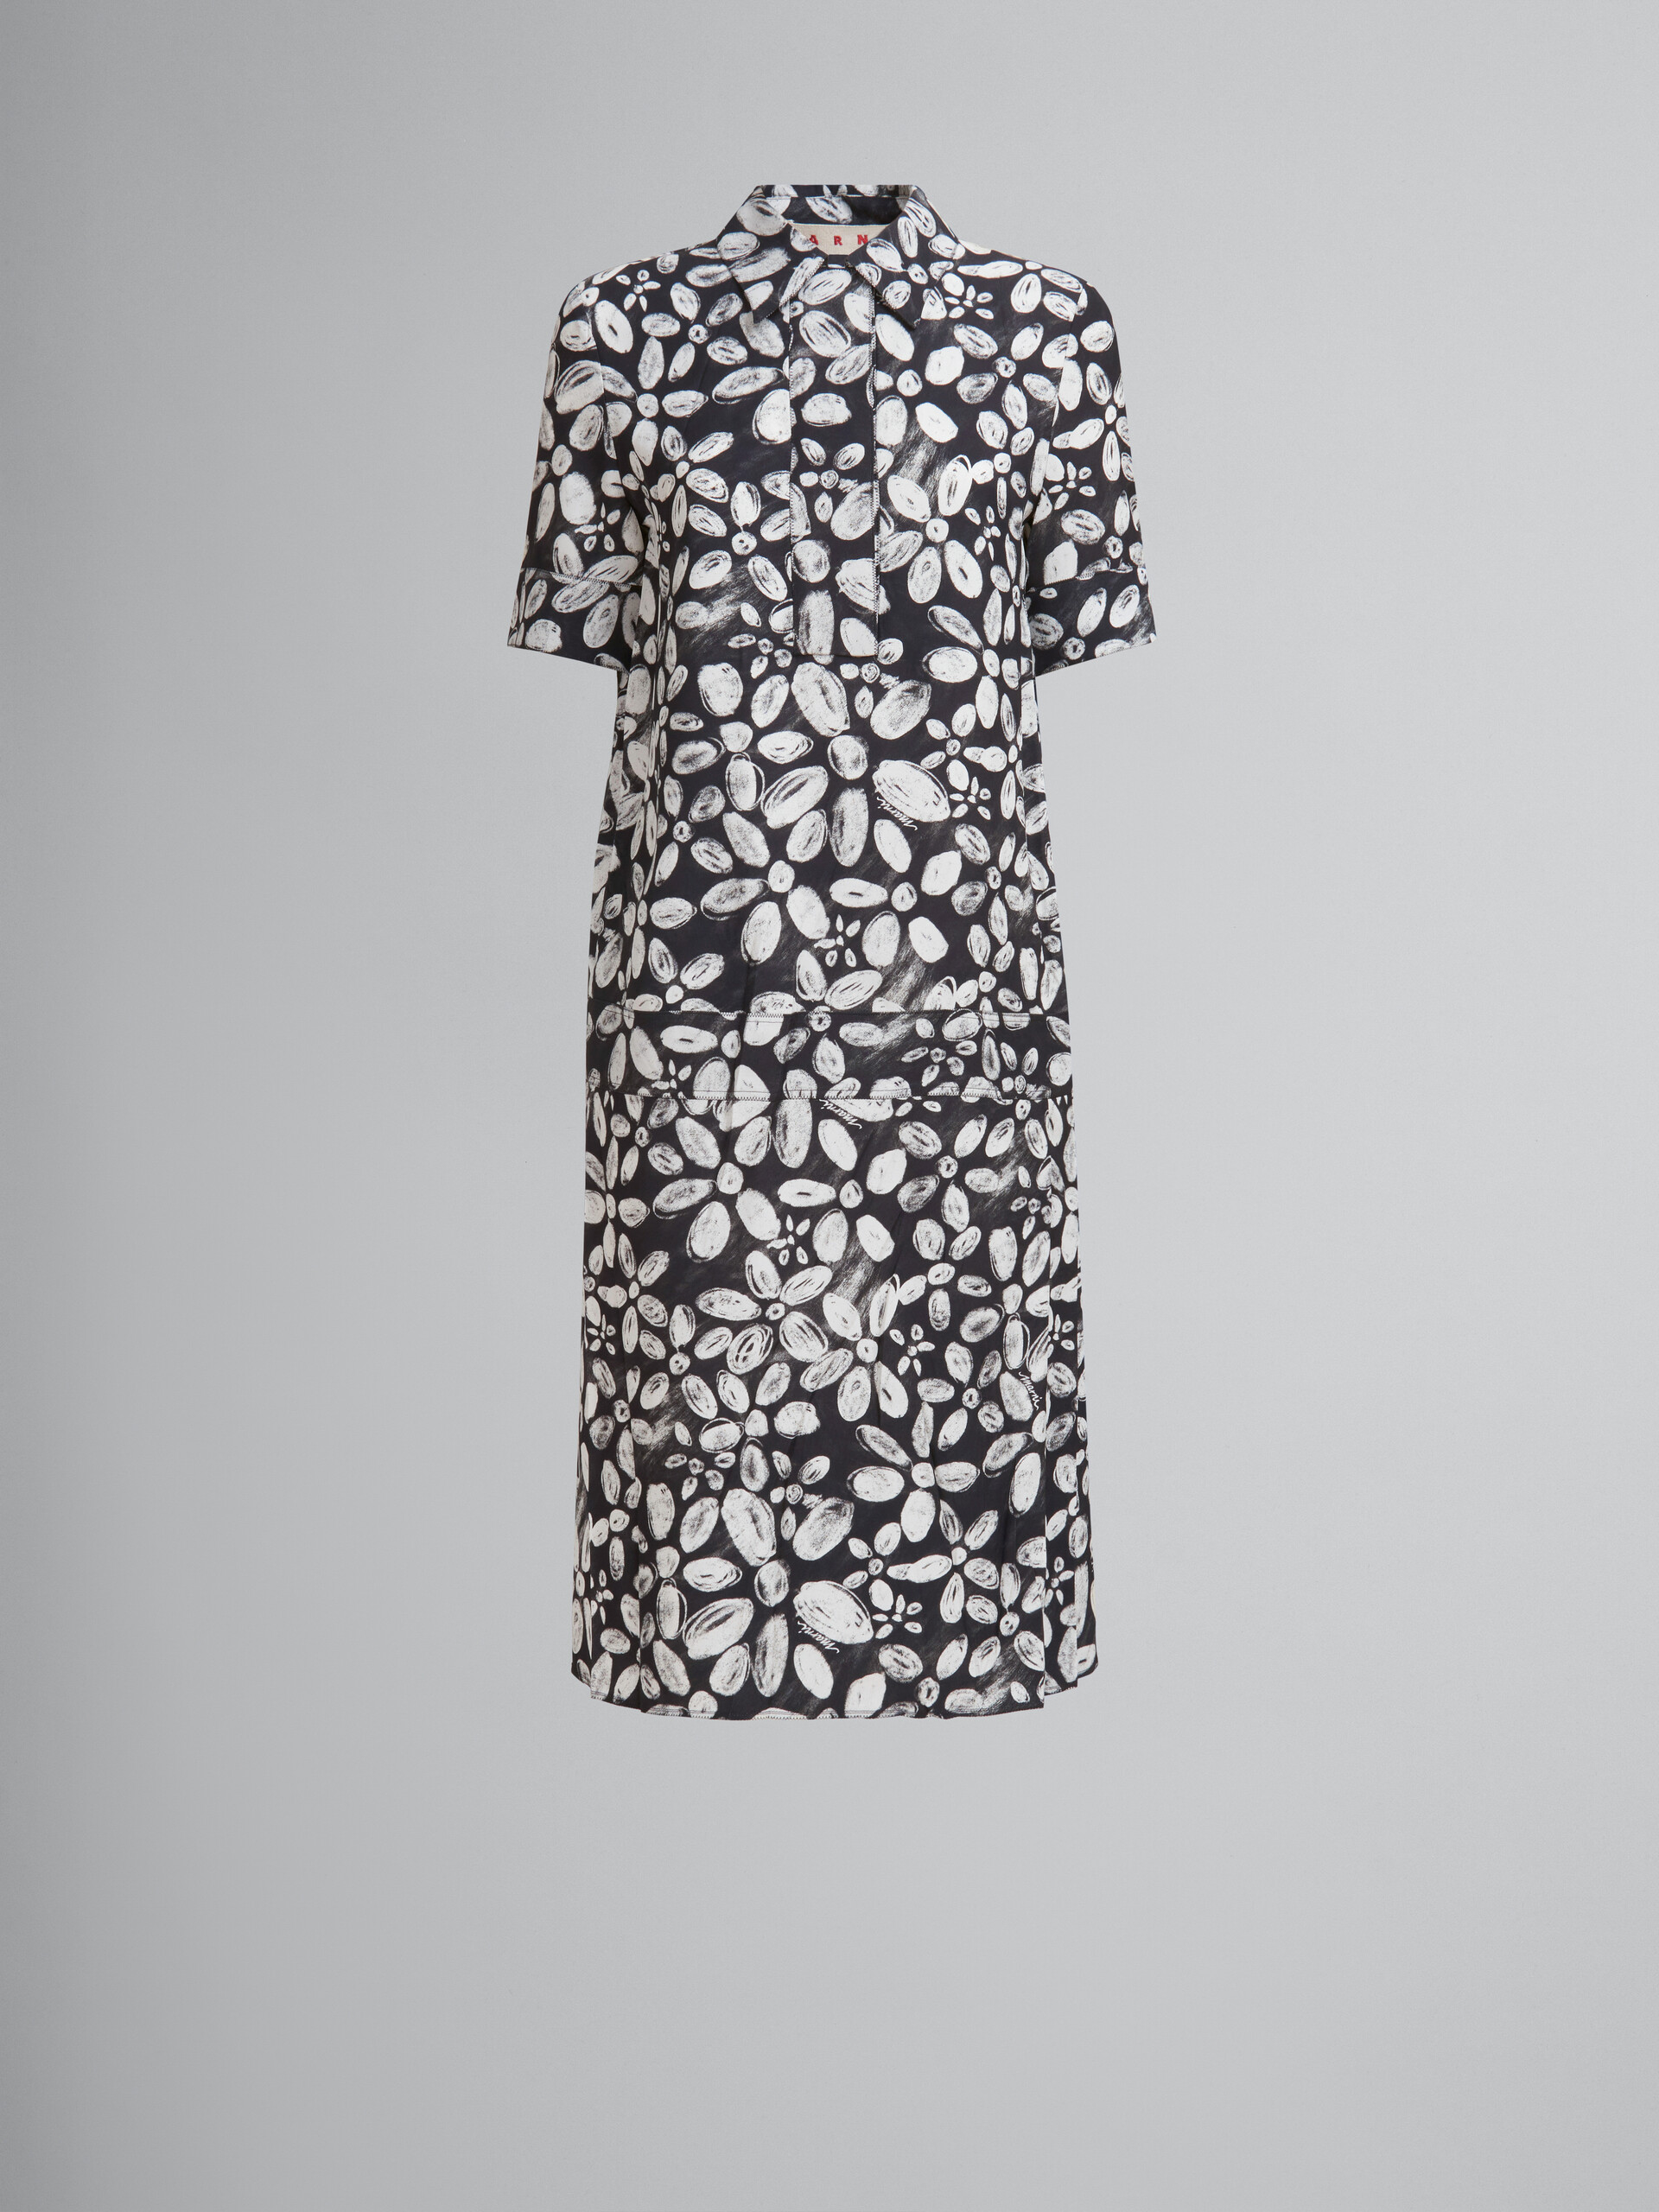 ブラック Bloomingプリント サテンバック クレープ製 ドレス - ドレス - Image 1